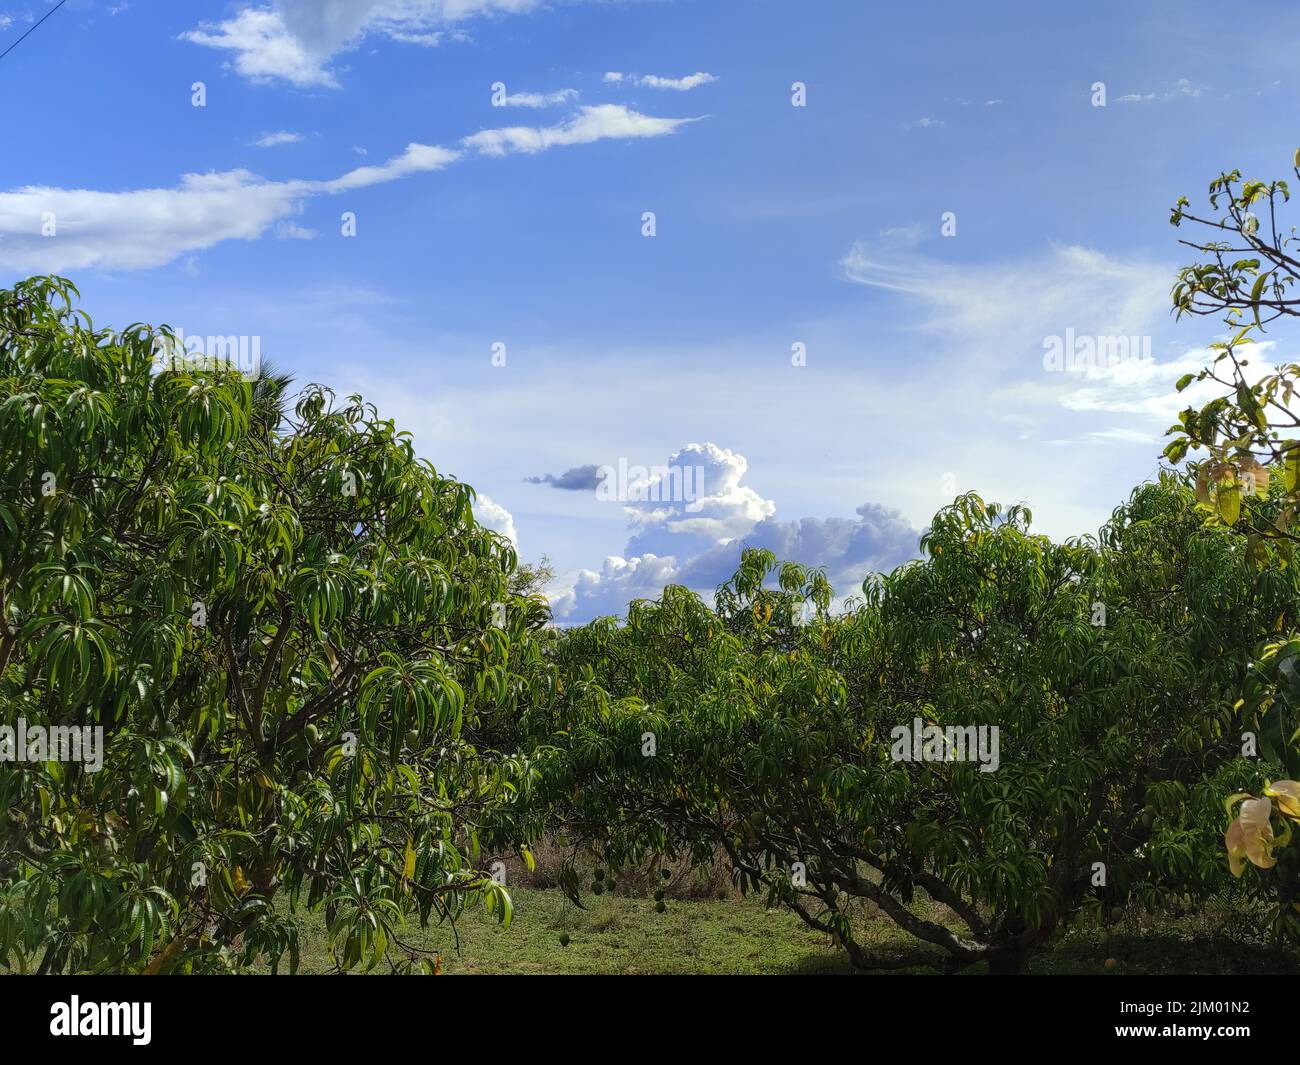 Eine schöne Aussicht auf die Landschaft mit grünen Bäumen gegen einen bewölkten Himmel Stockfoto